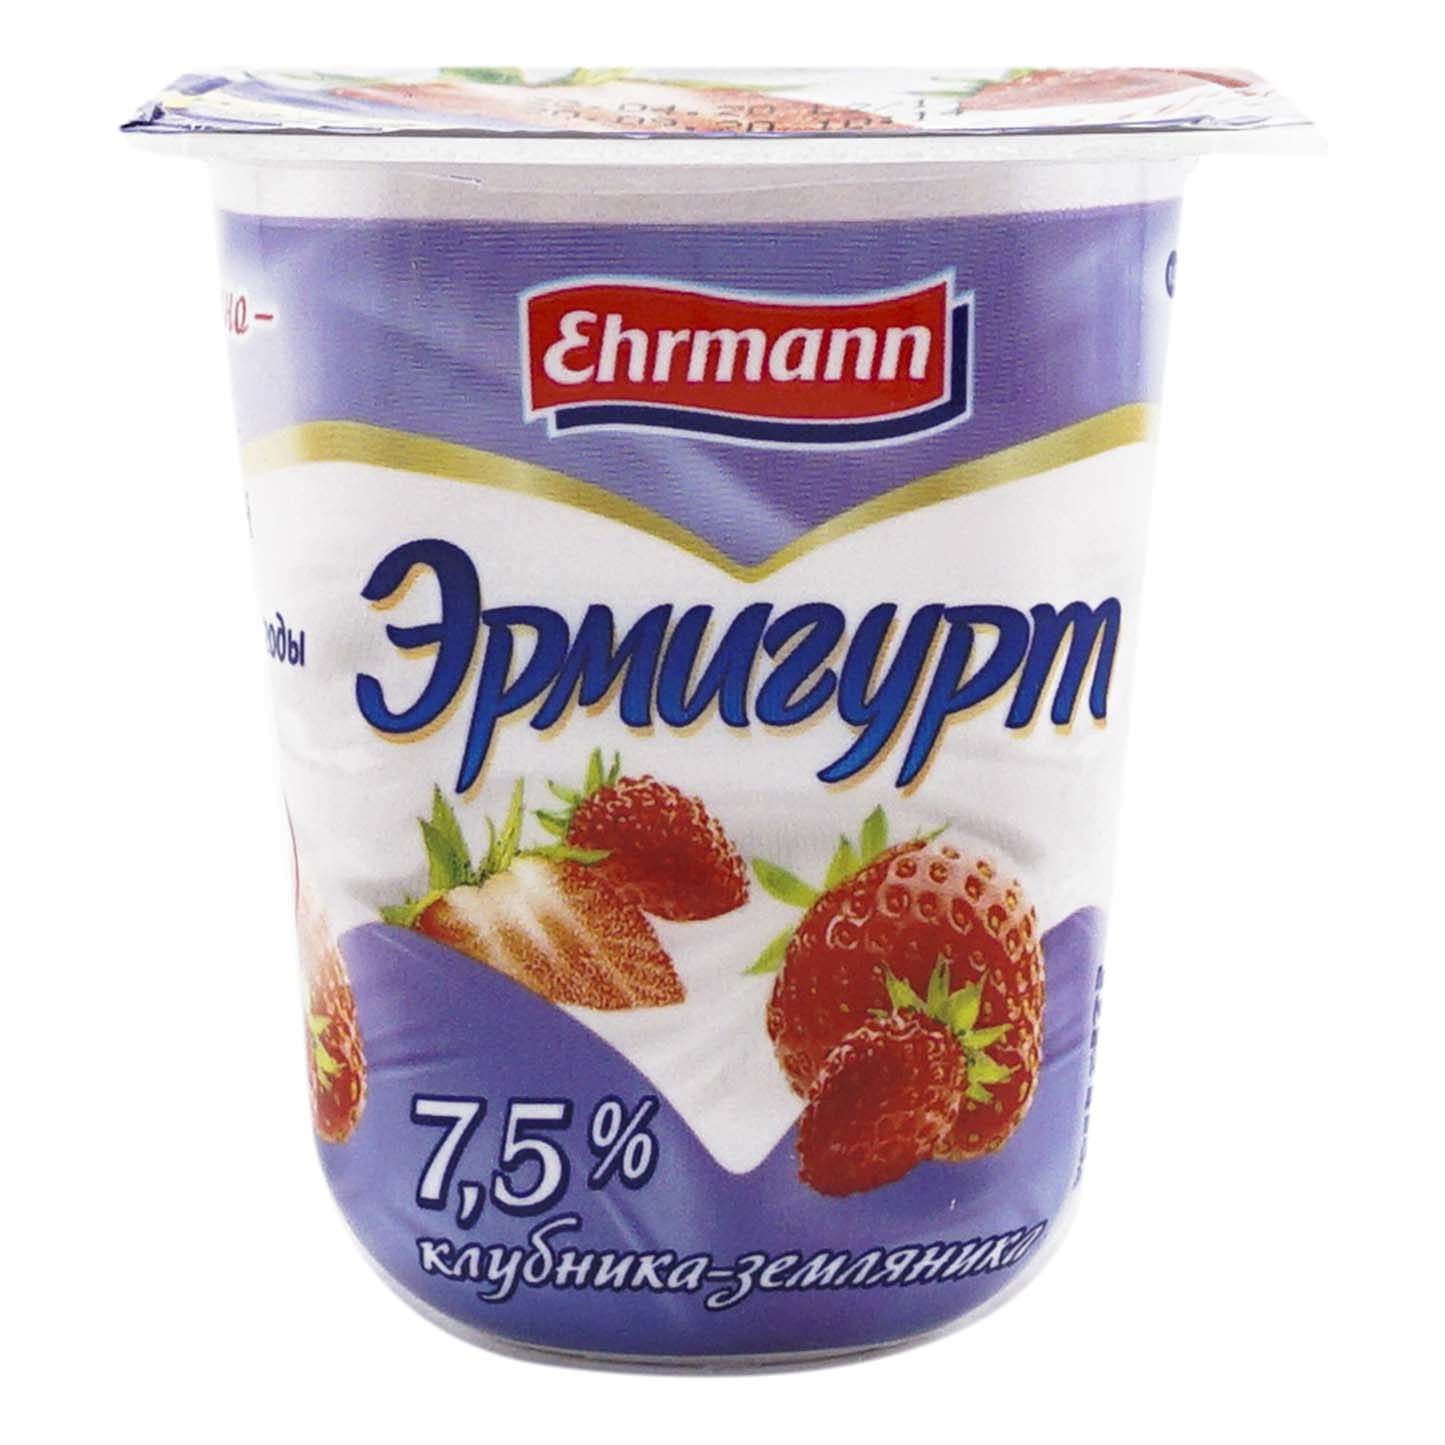 Йогуртный продукт Эрмигурт клубника земляника 7,5% 115 г 4 шт бзмж